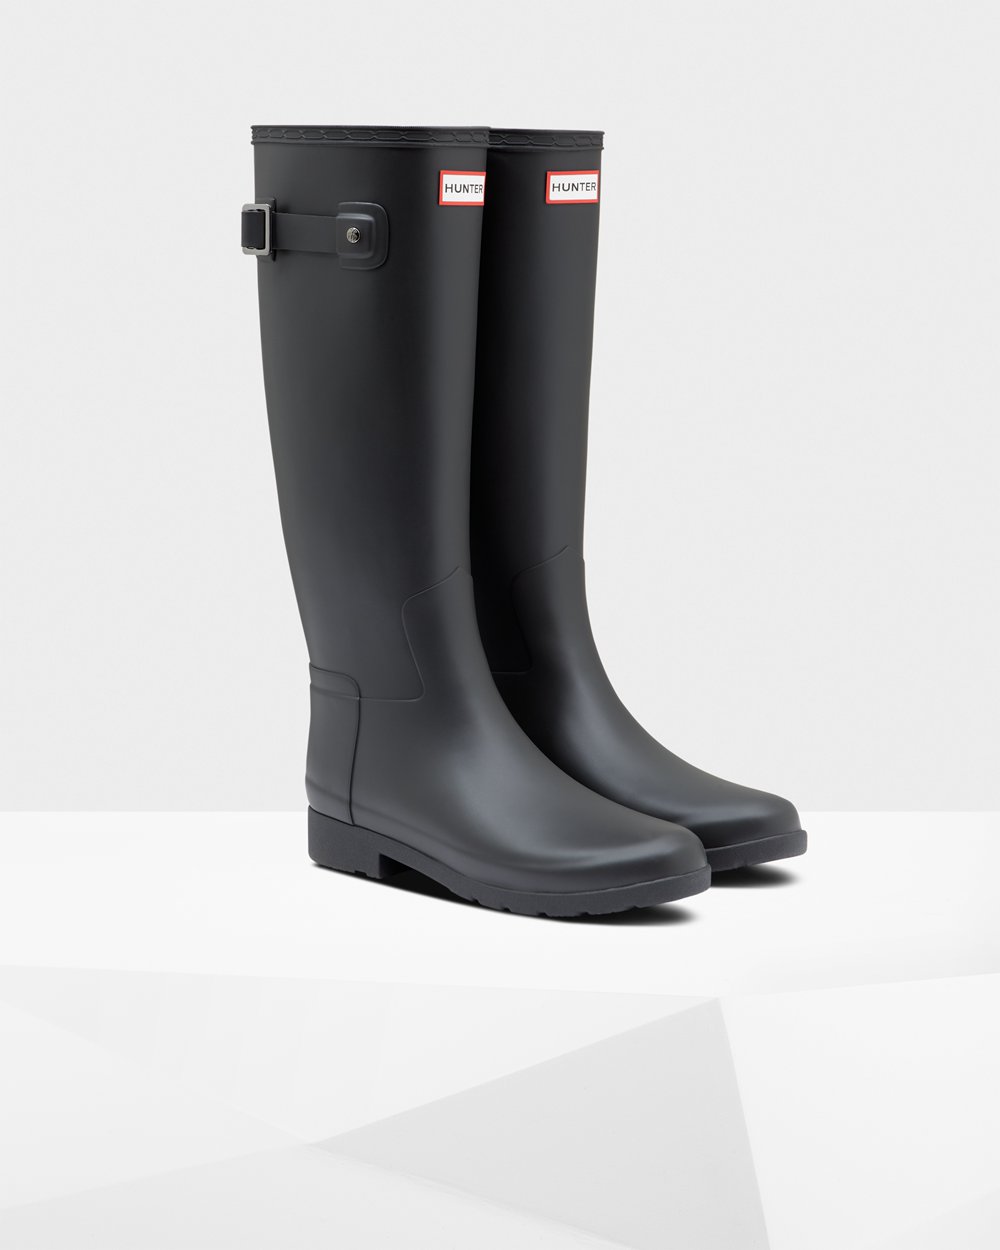 Womens Tall Rain Boots - Hunter Refined Slim Fit (32DKPHTQI) - Black